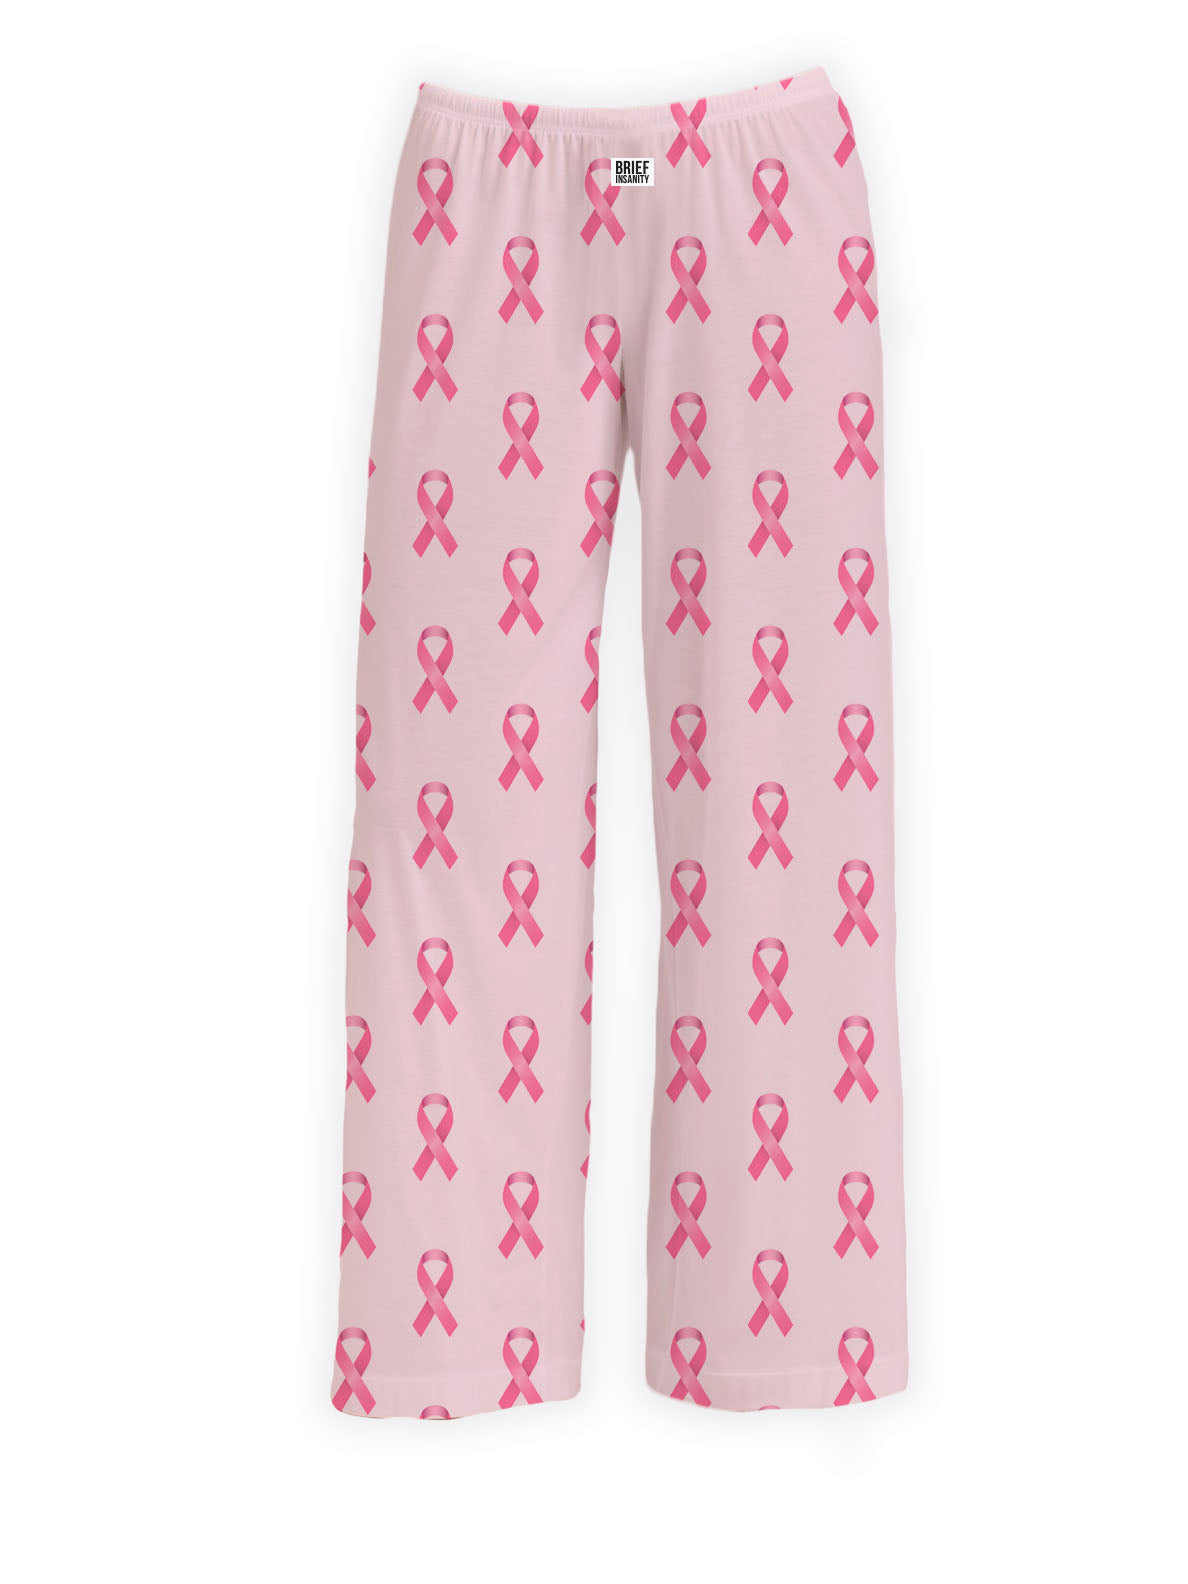 BRIEF INSANITY Pink Ribbon Breast Cancer Awareness Pajama Pants